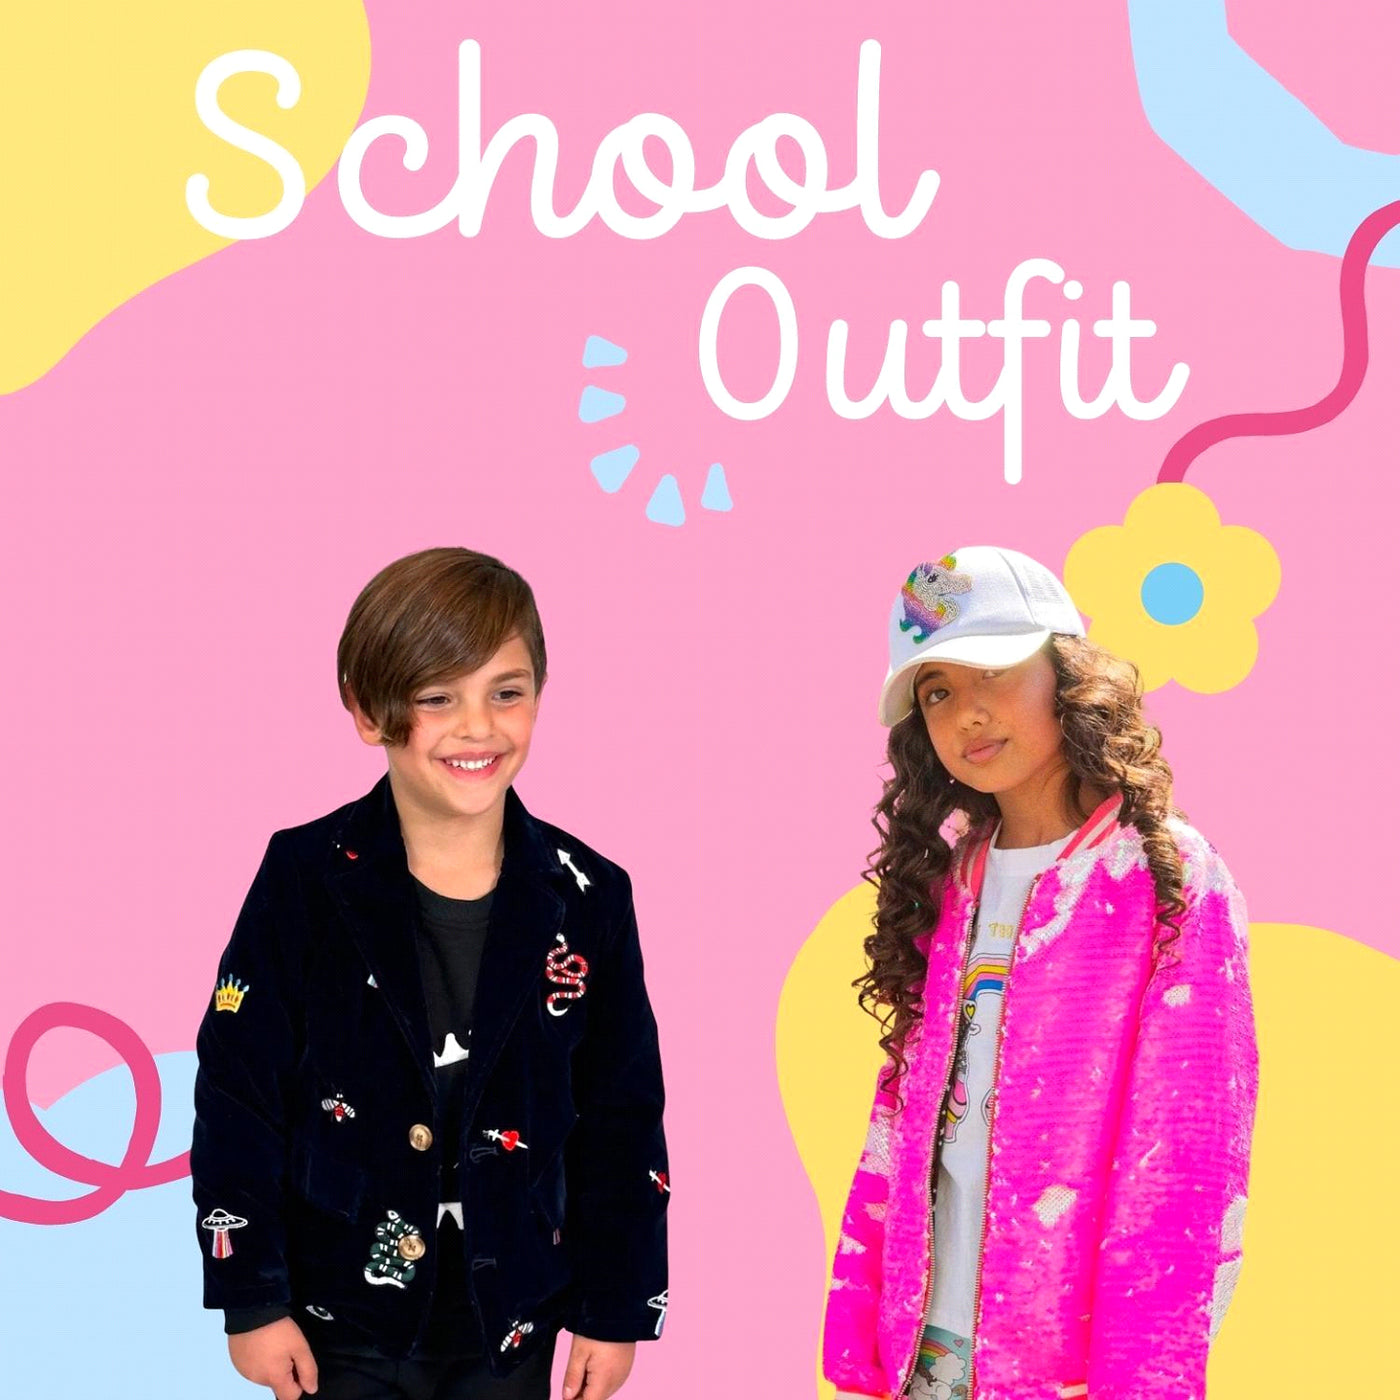 https://lolaandtheboys.com/cdn/shop/articles/how_to_look_lool-at_school_-_5_cute_outfit_ideas_1400x.progressive.jpg?v=1666850332